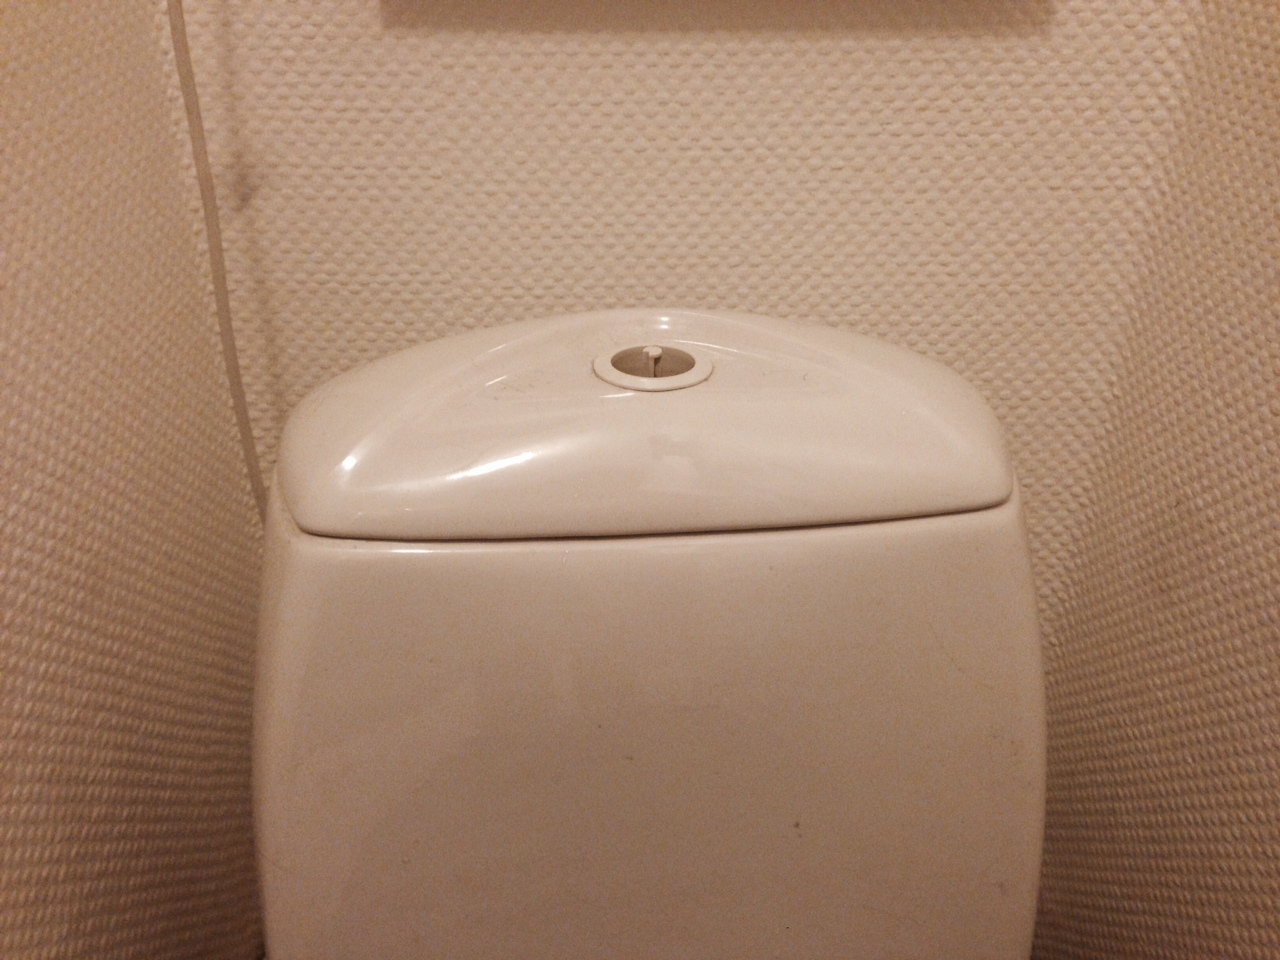 Hjelp til å åpne sisterne på toalett - bilde 2.JPG - bighc